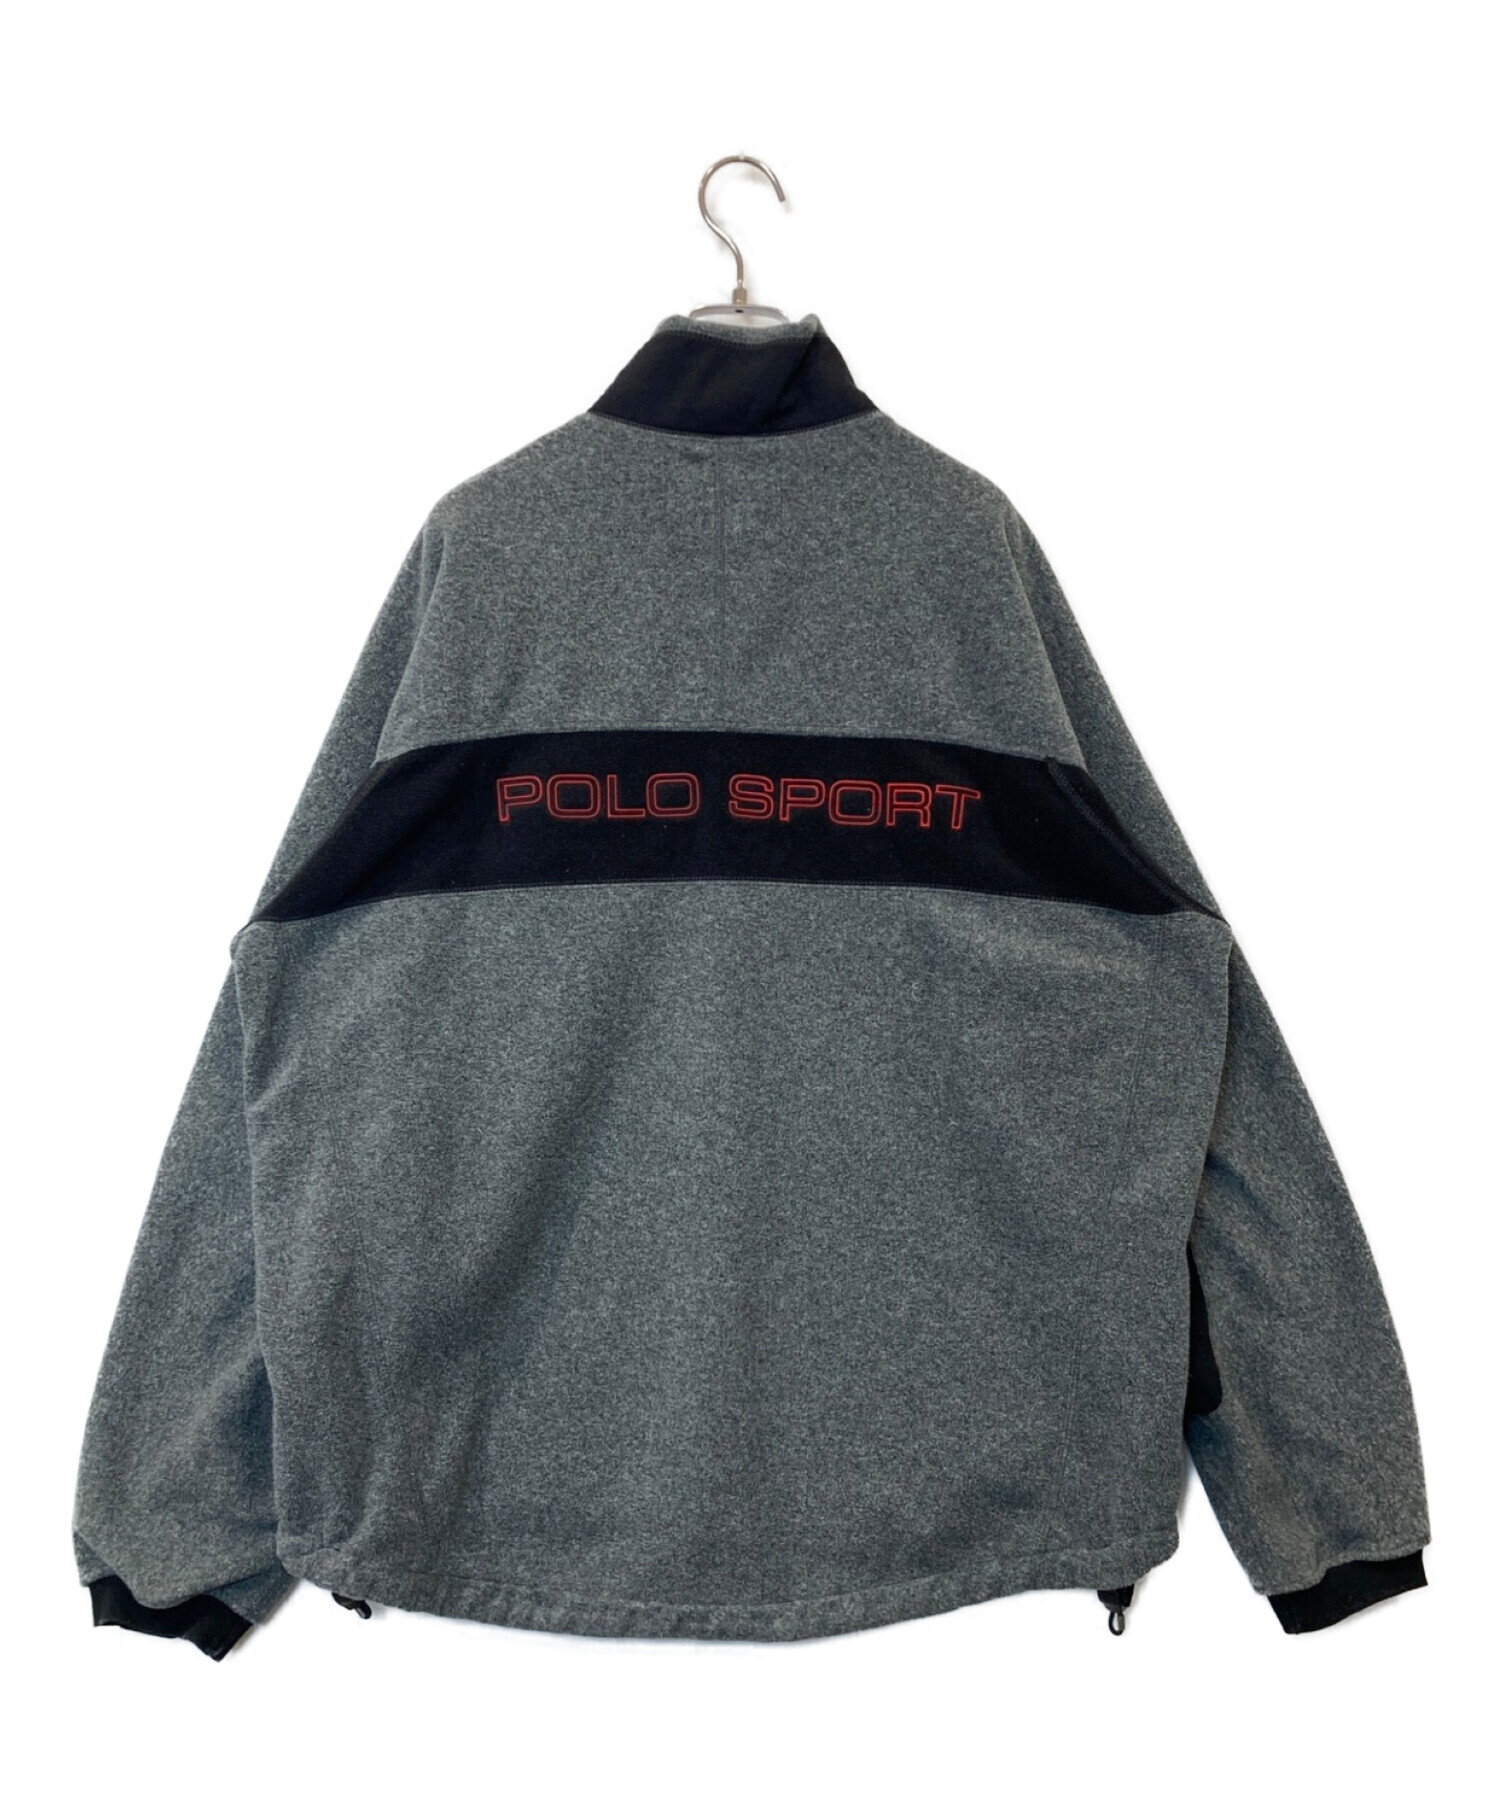 POLO SPORT (ポロスポーツ) フリースジャケット グレー サイズ:L